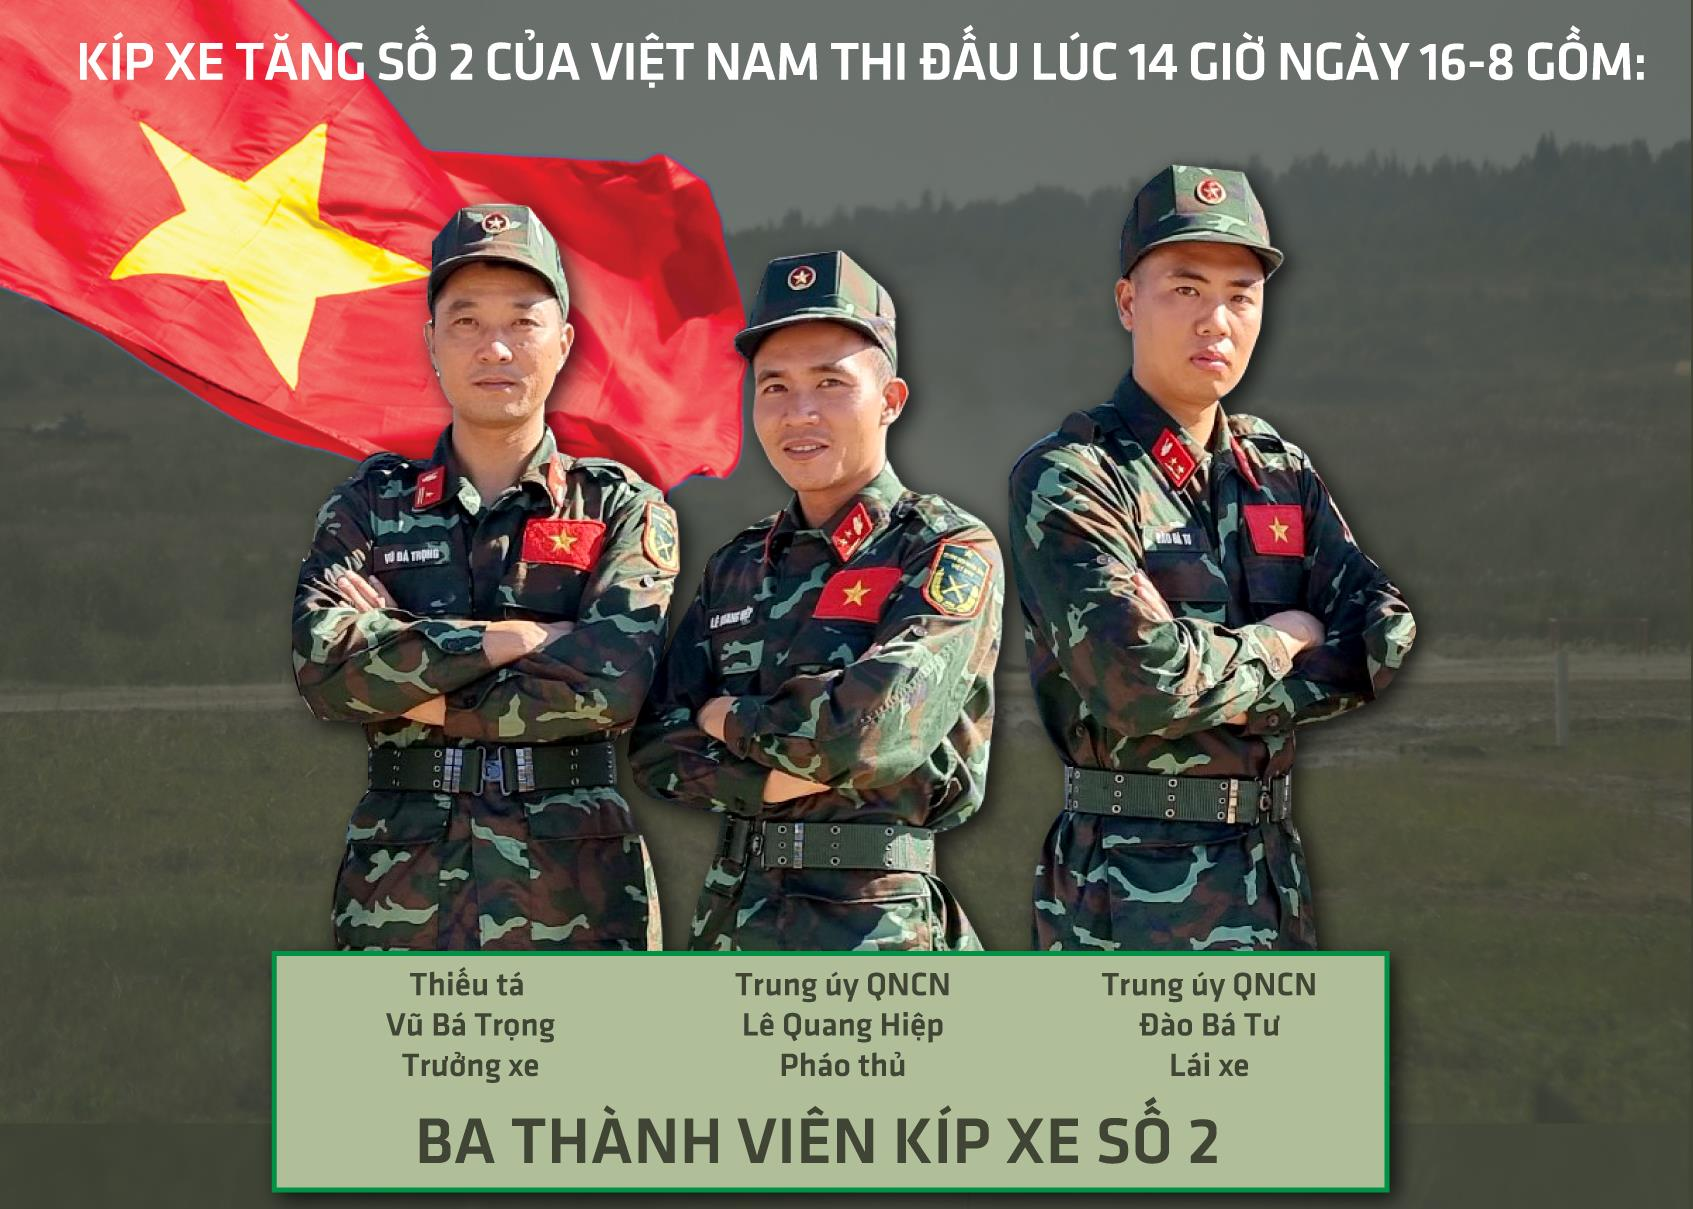 Trực tiếp: Đội tuyển Xe tăng Việt Nam đứng trước mục tiêu lớn ở lượt trận thứ 5 - 3